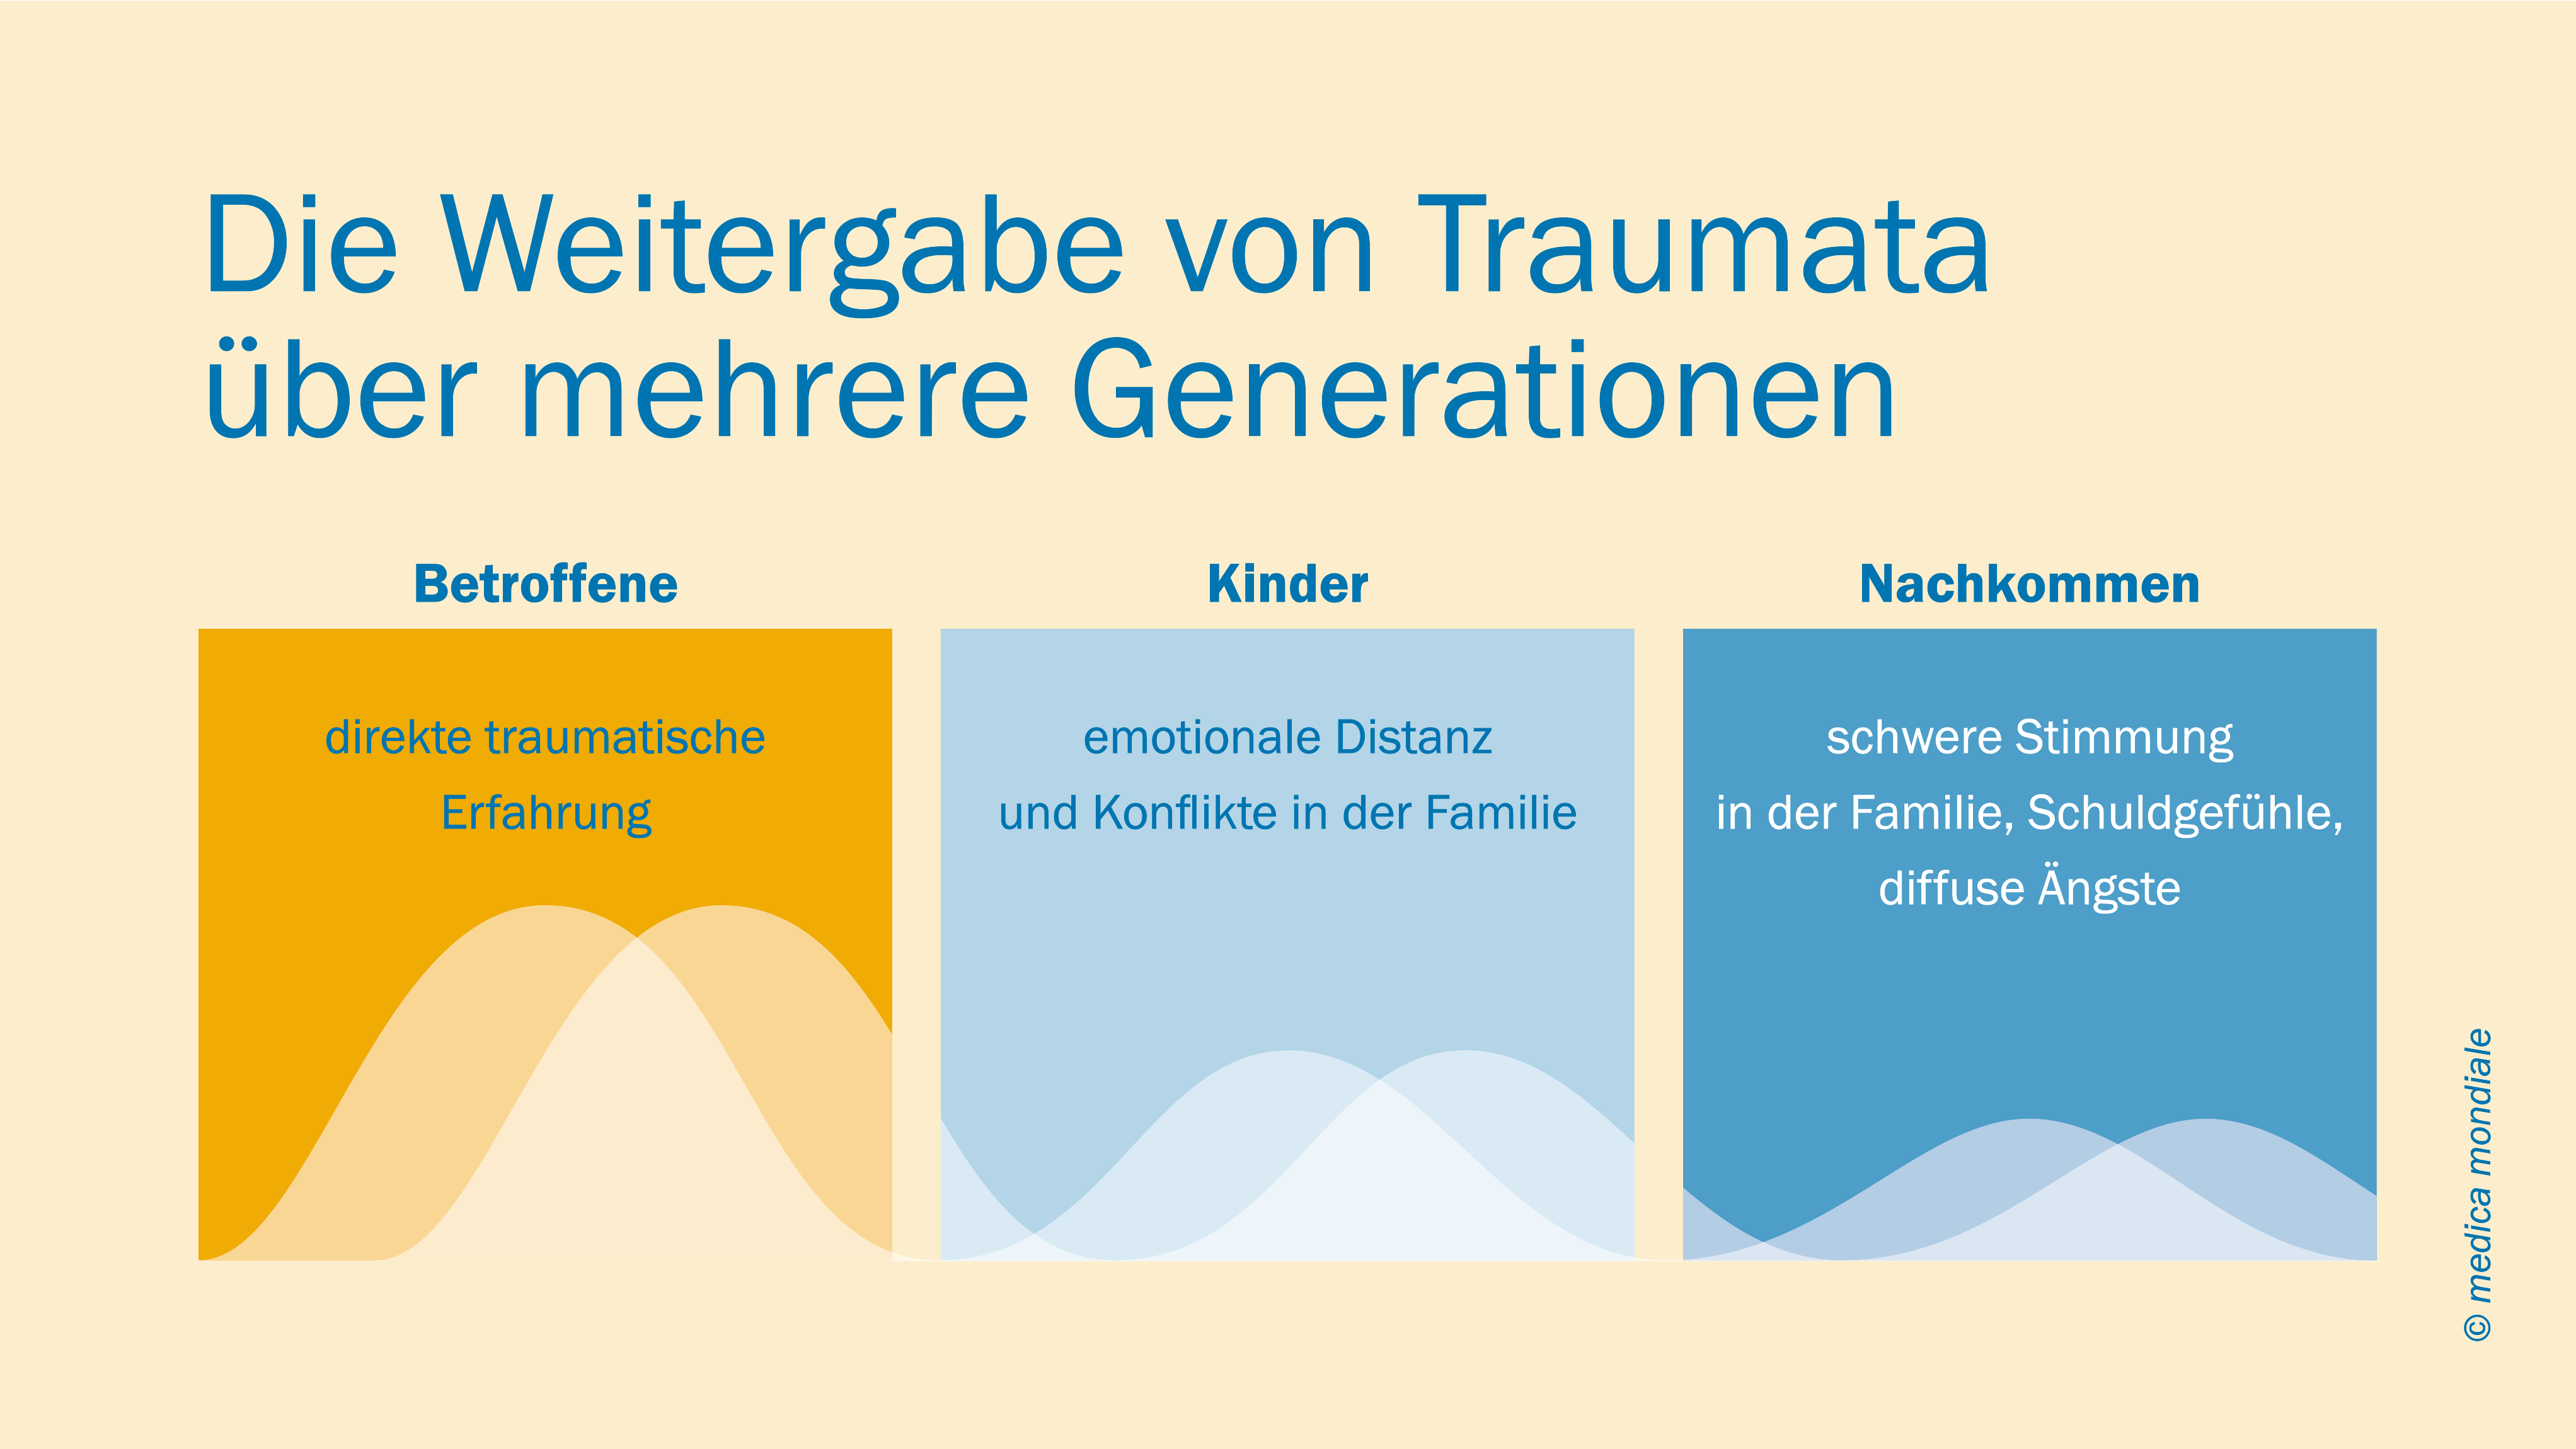 Infografik zur Veranschaulichung von transgenerationalem Trauma.